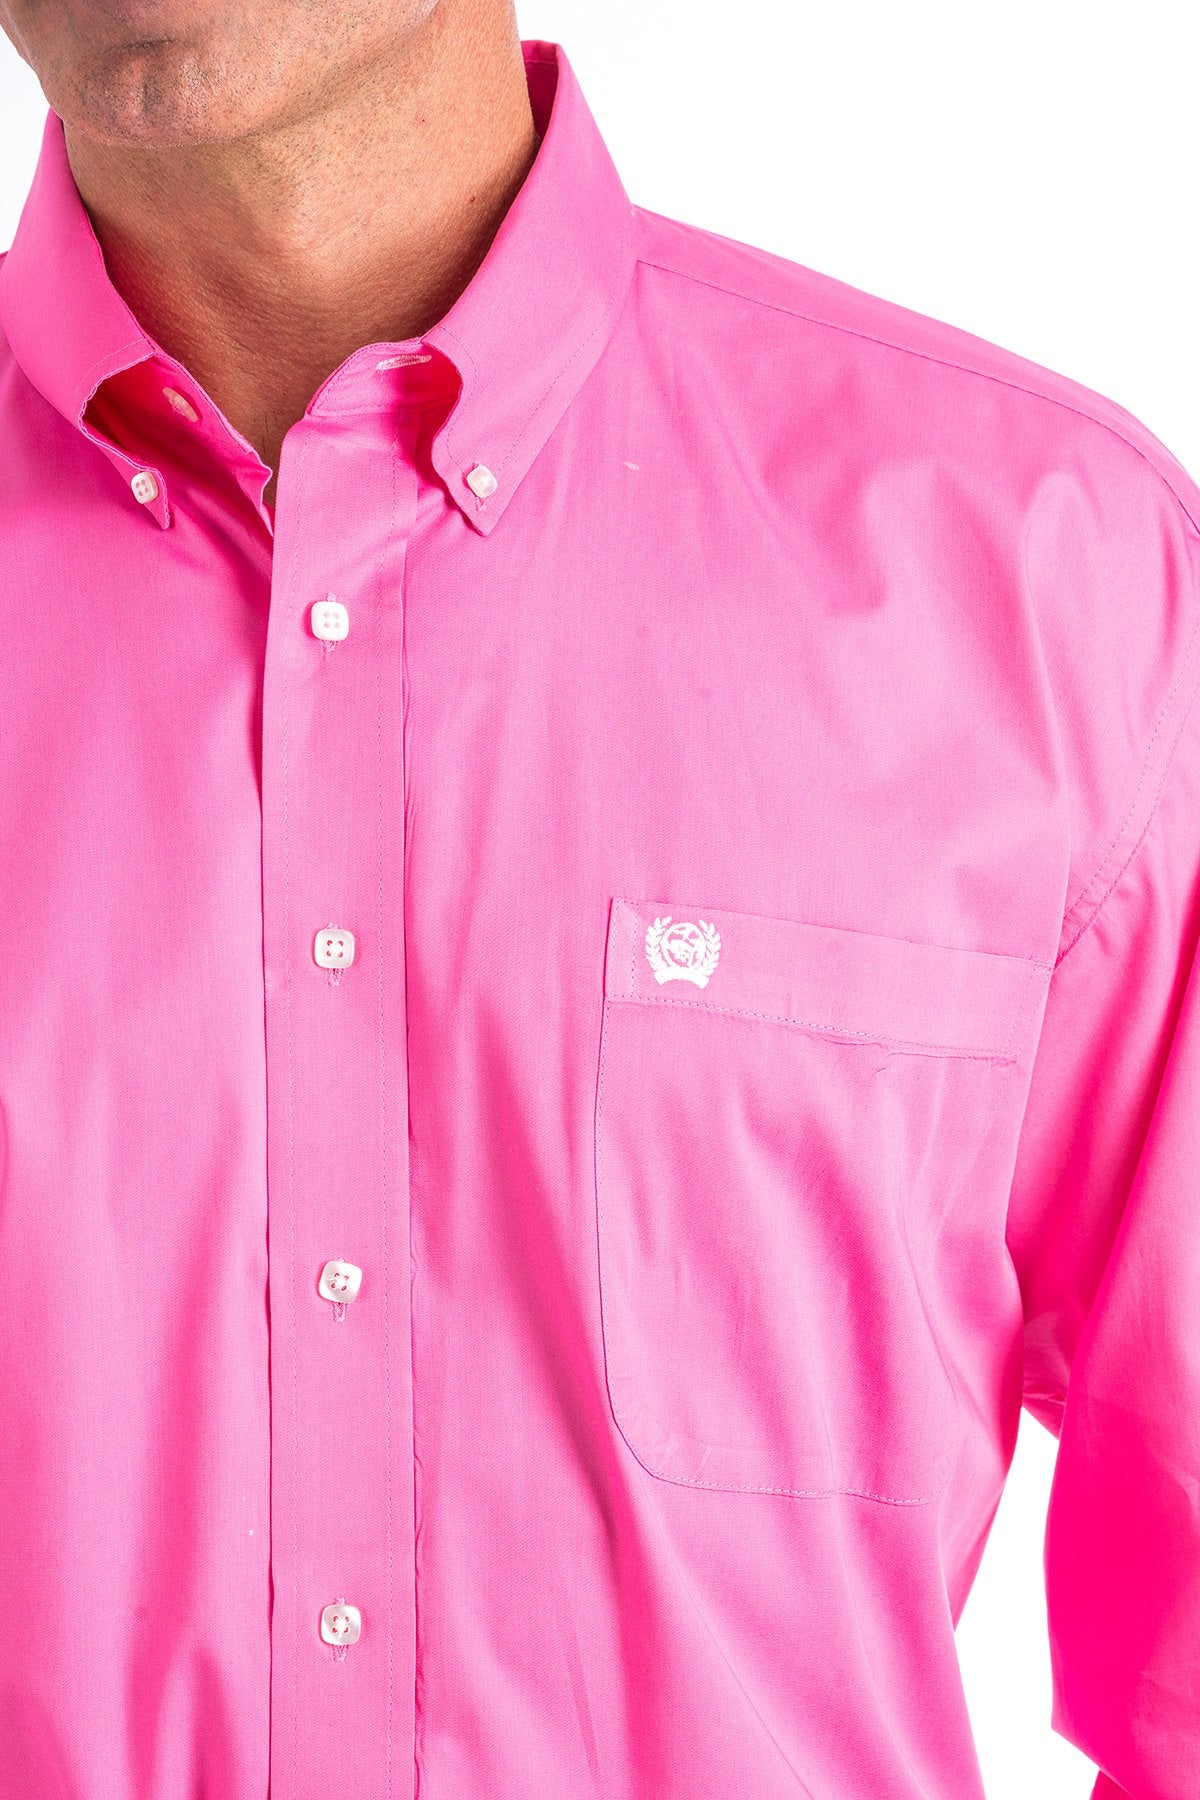 Cinch Solid Pink Men's Shirt